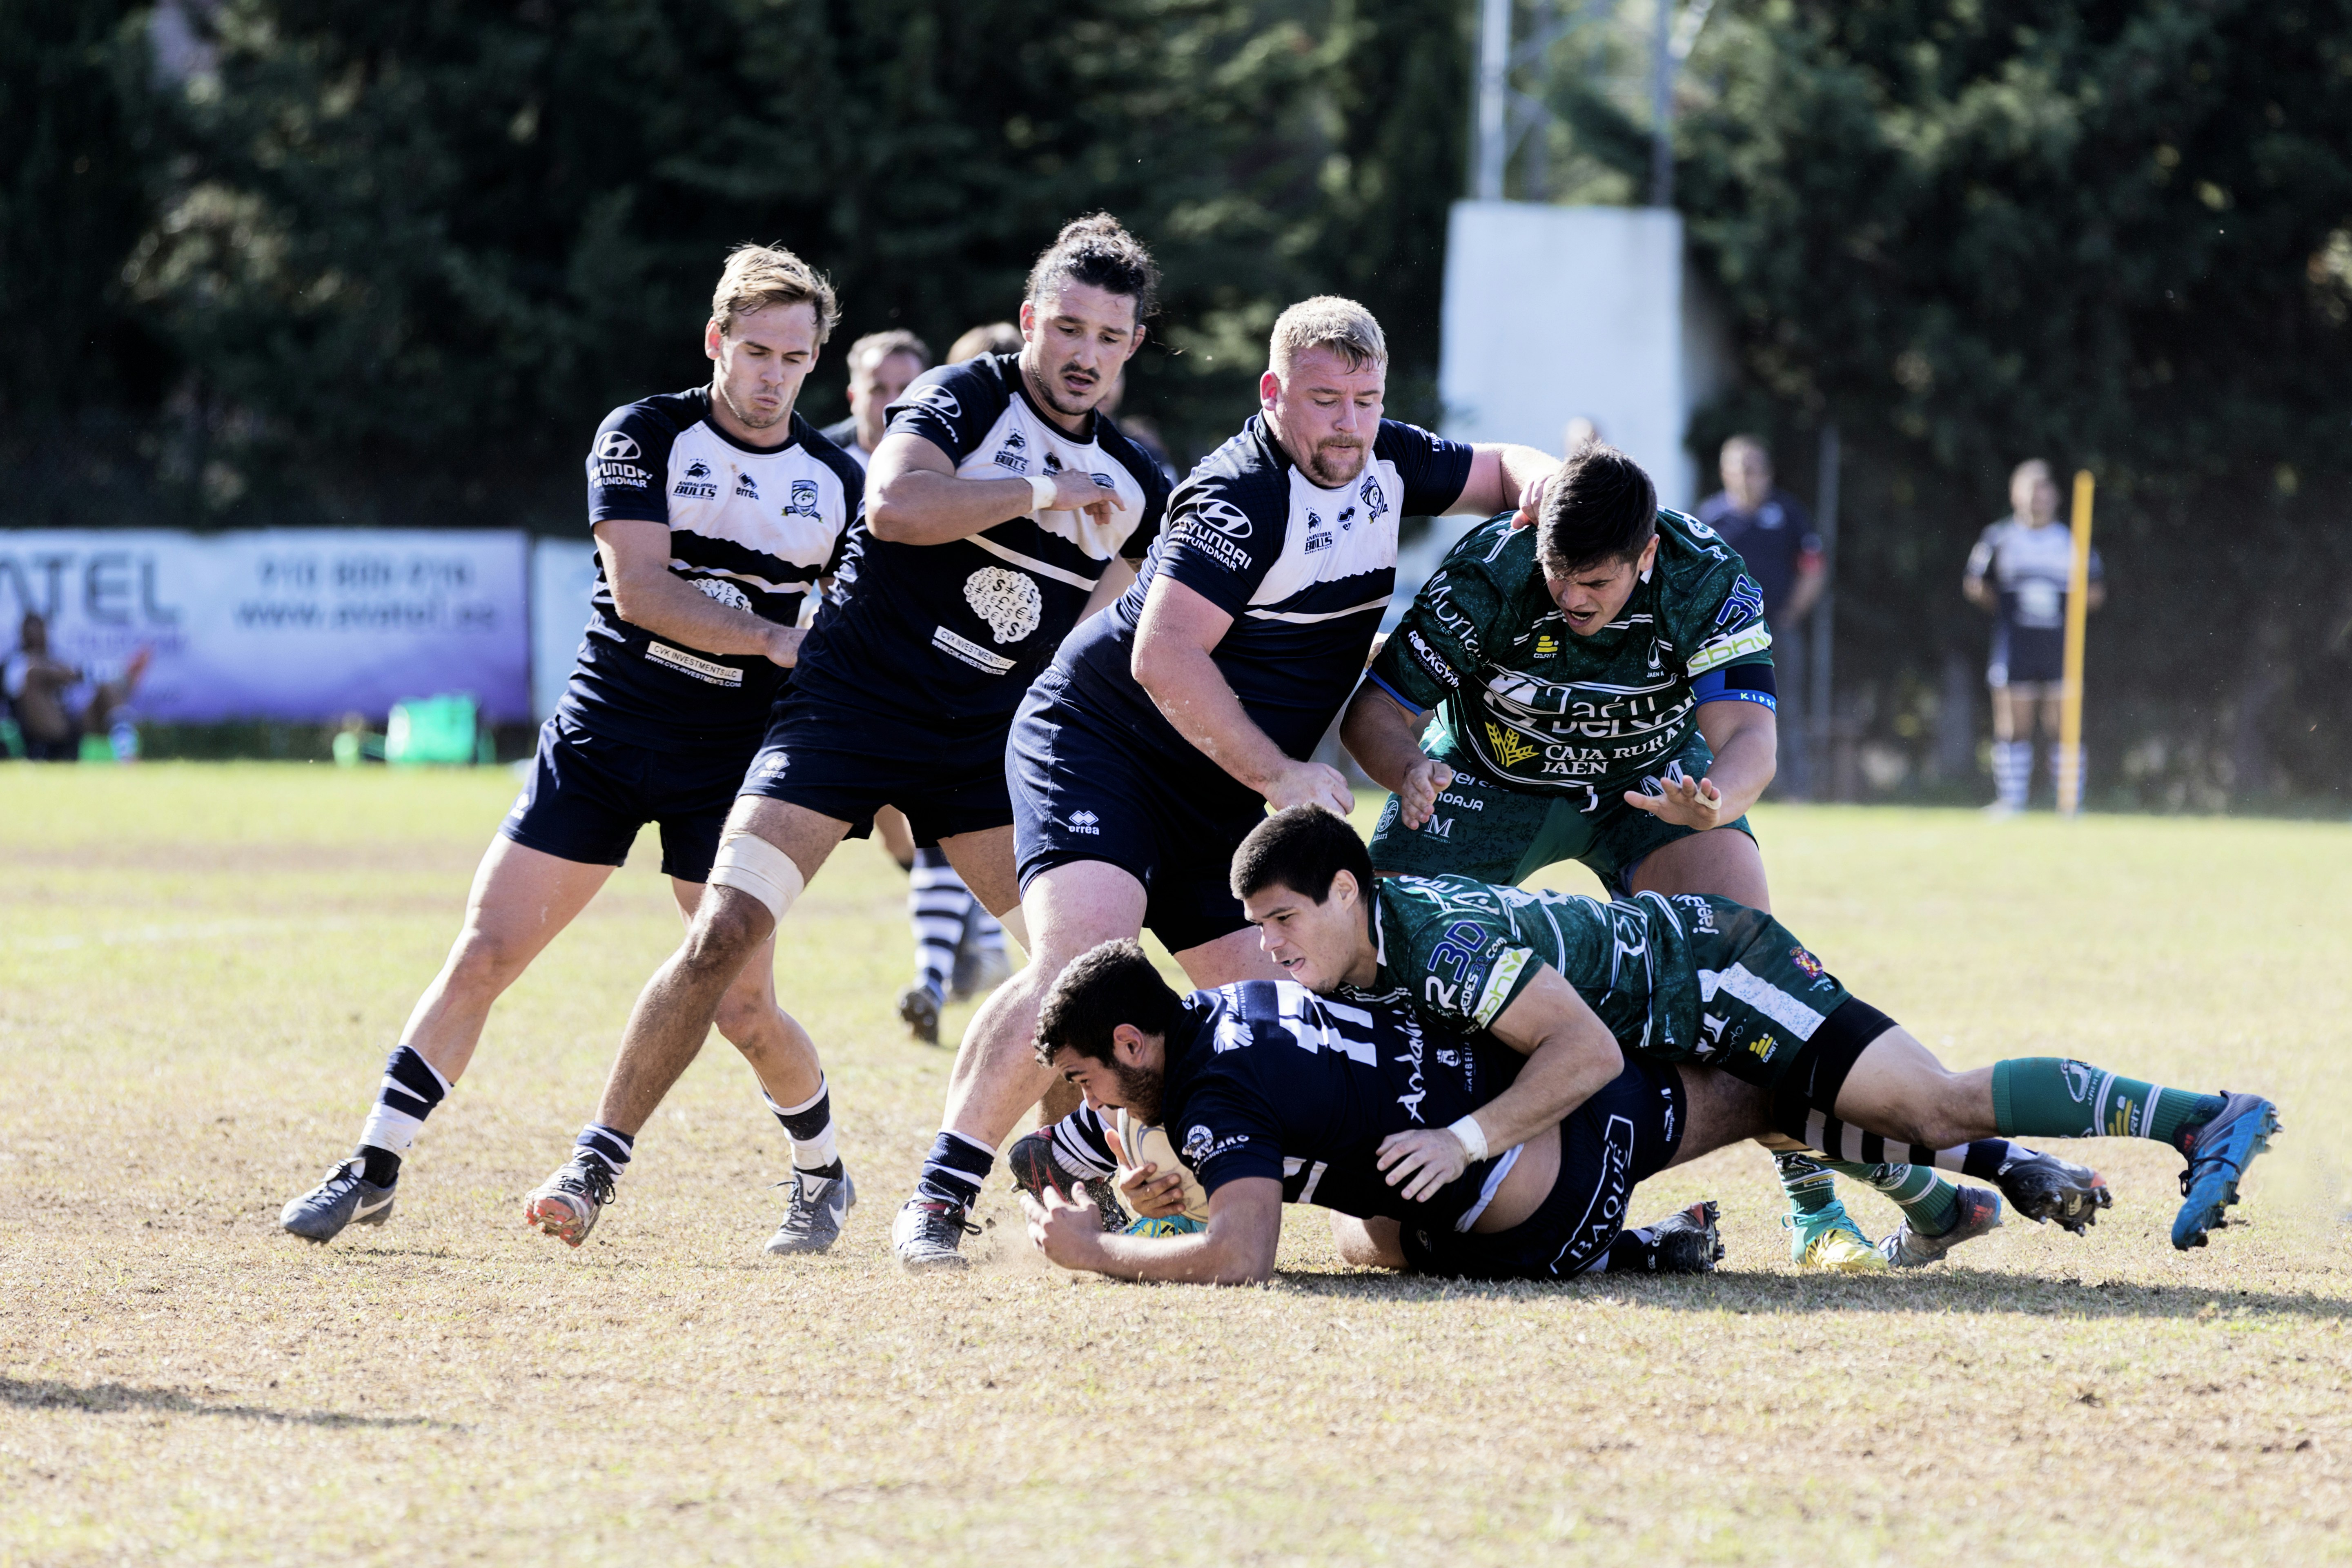 Un momento del partido de rugby jugado el 10-11-2019 en el Bahia's Park de Marbella entre los equipos Andalucía Bulls Marbella Rugby Club y el Jaén Rugby Club.